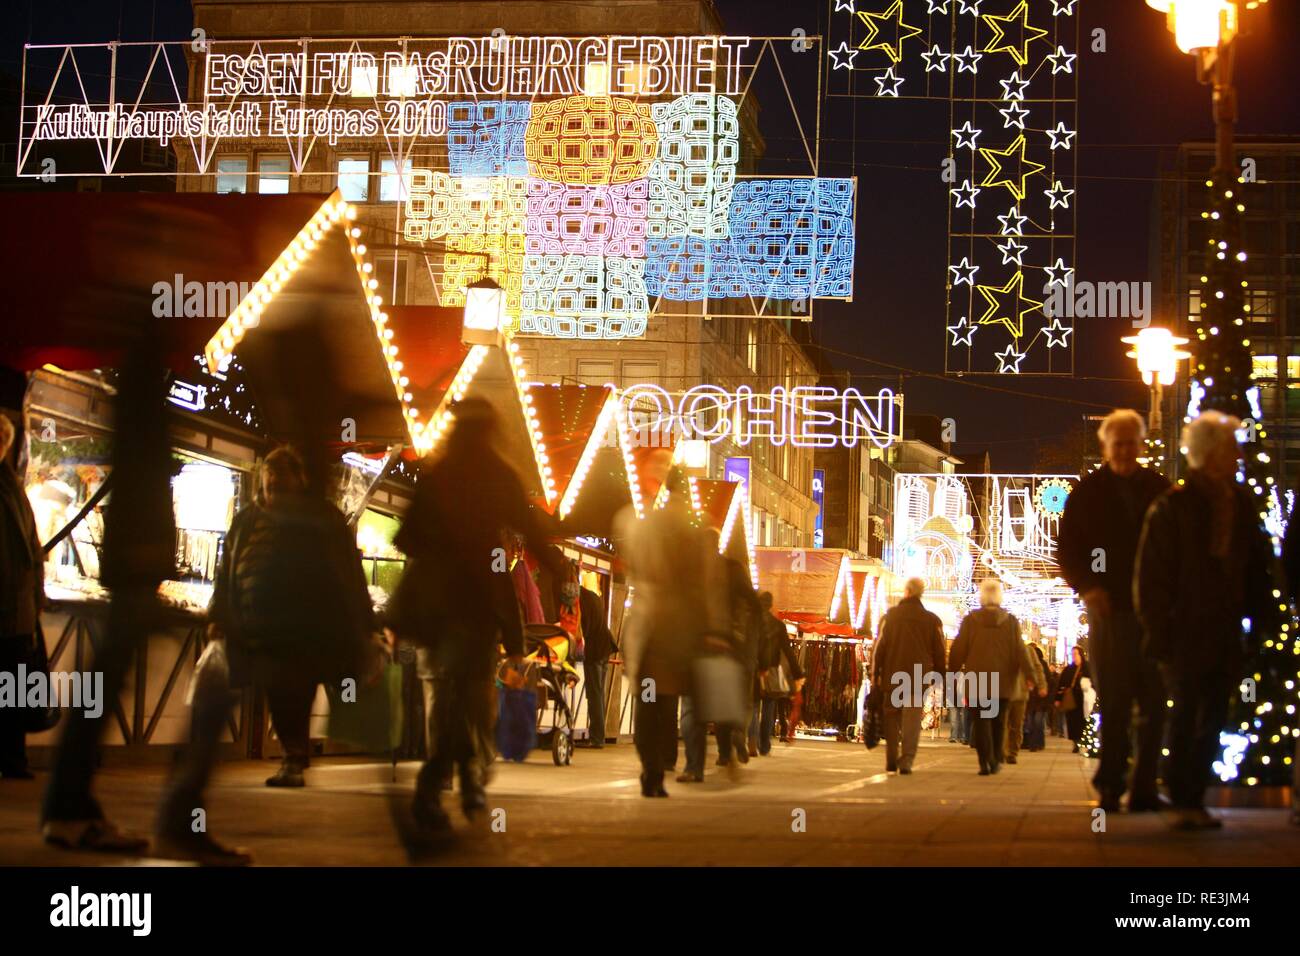 Mercatino di Natale e il sessantesimo Essen settimane di luce, il logo della capitale europea della cultura per il 2010, e altri motivi di luci, Foto Stock